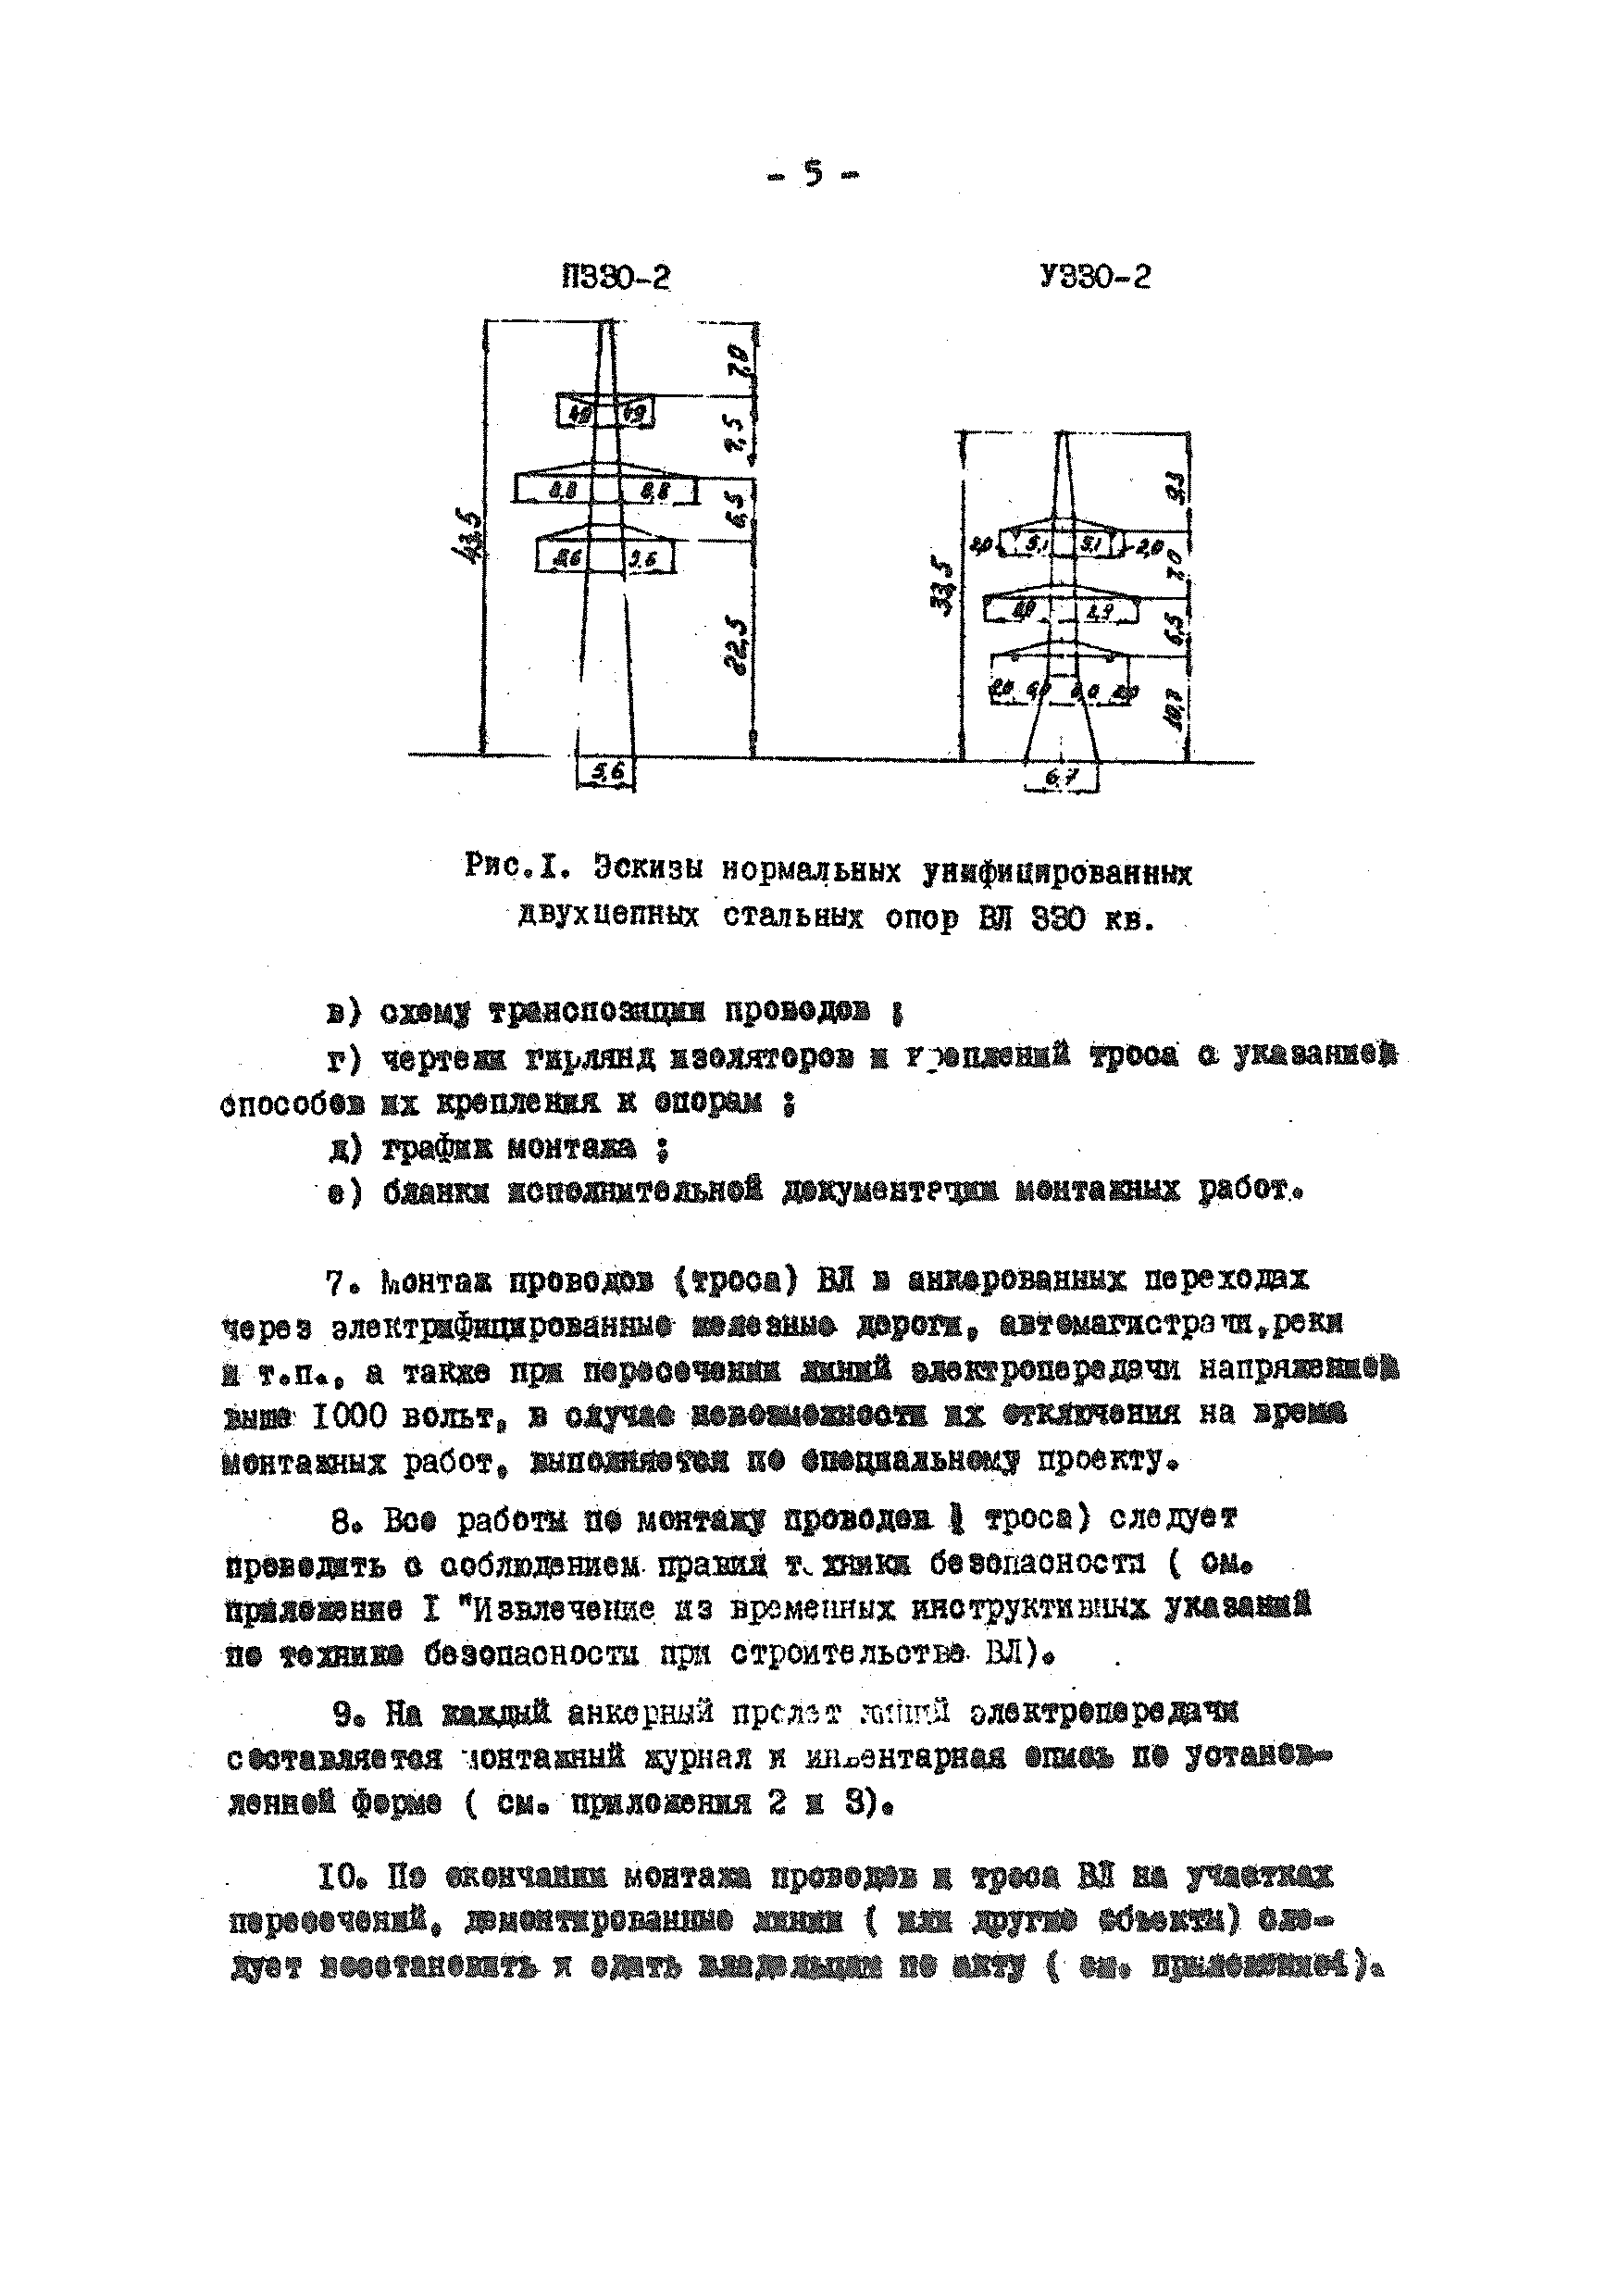 ТТК К-V-14-2